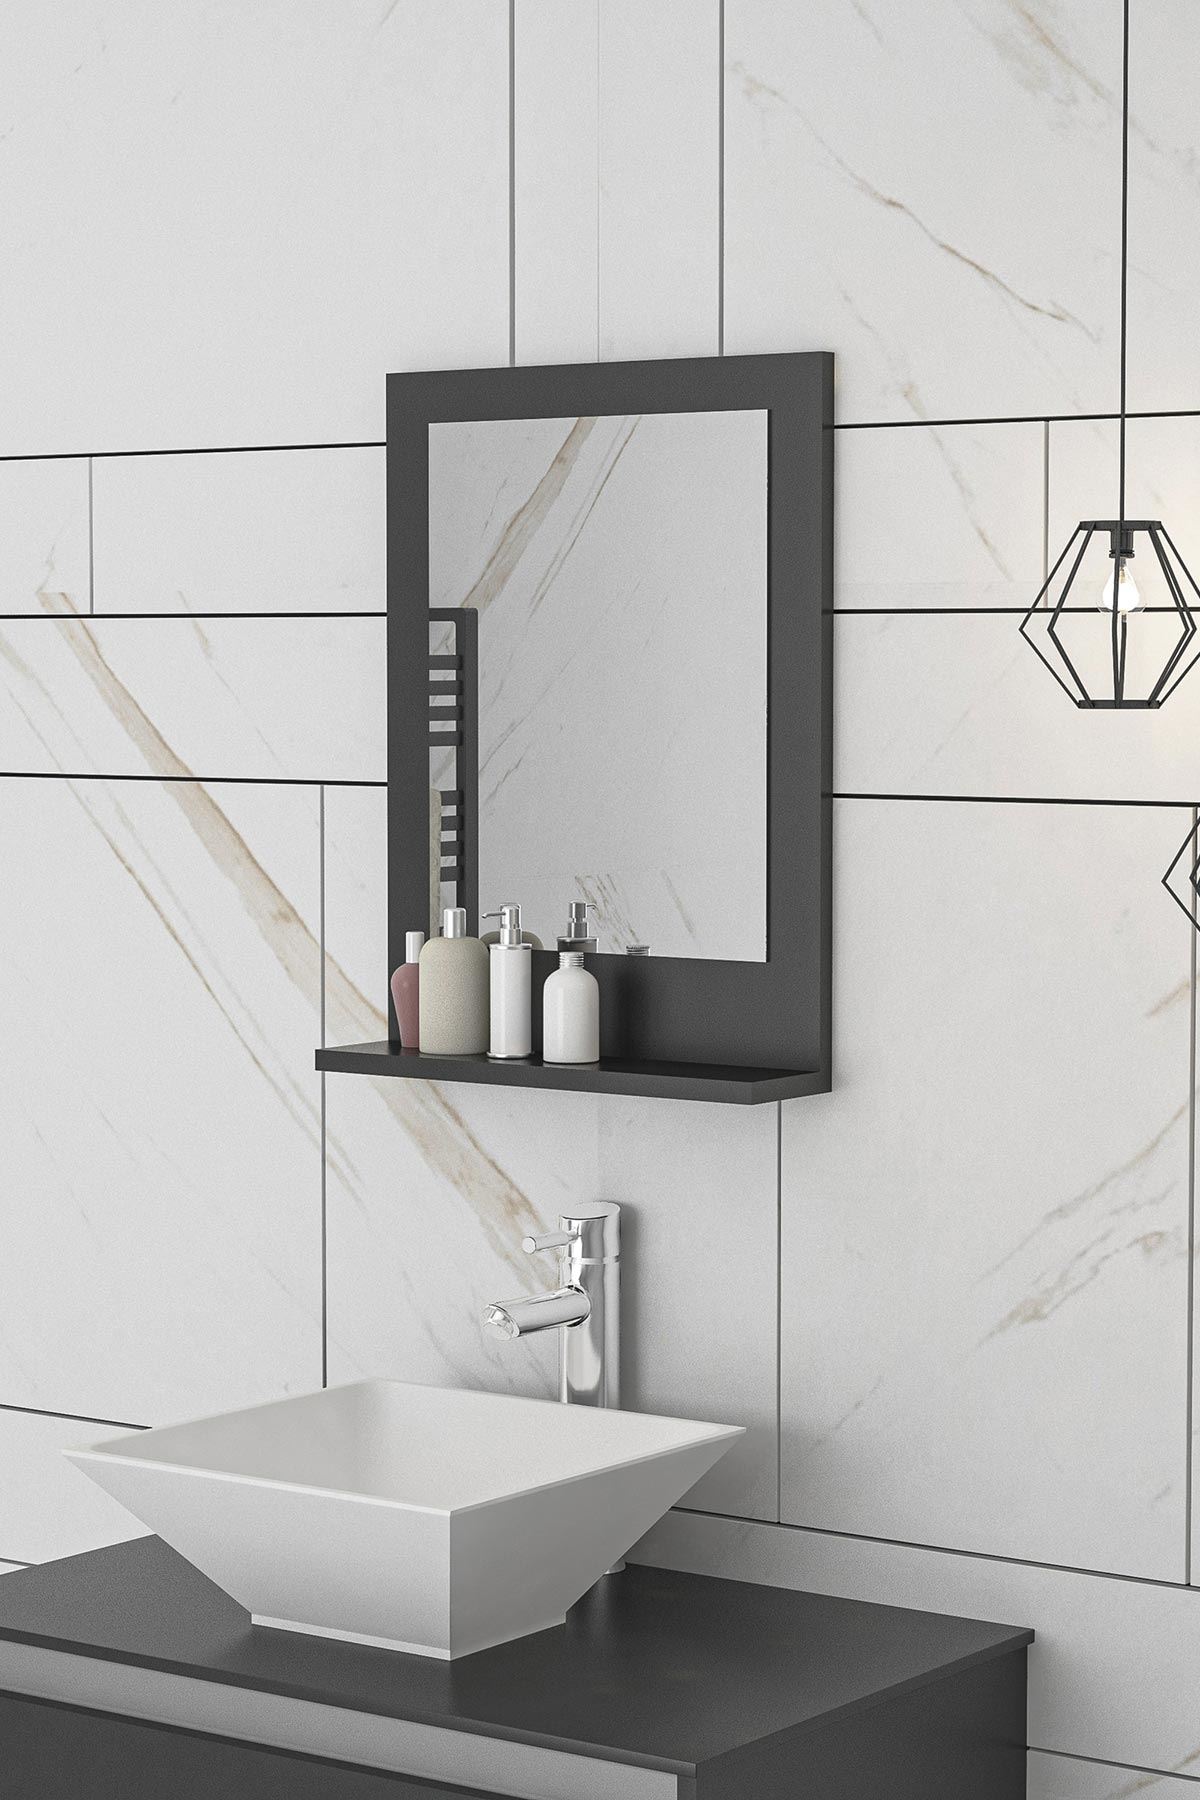 Bofigo 45x60 Cm Verona Banyo Rafı Lavabo Rafı Aynalı Raf Banyo Aynası Antrasit